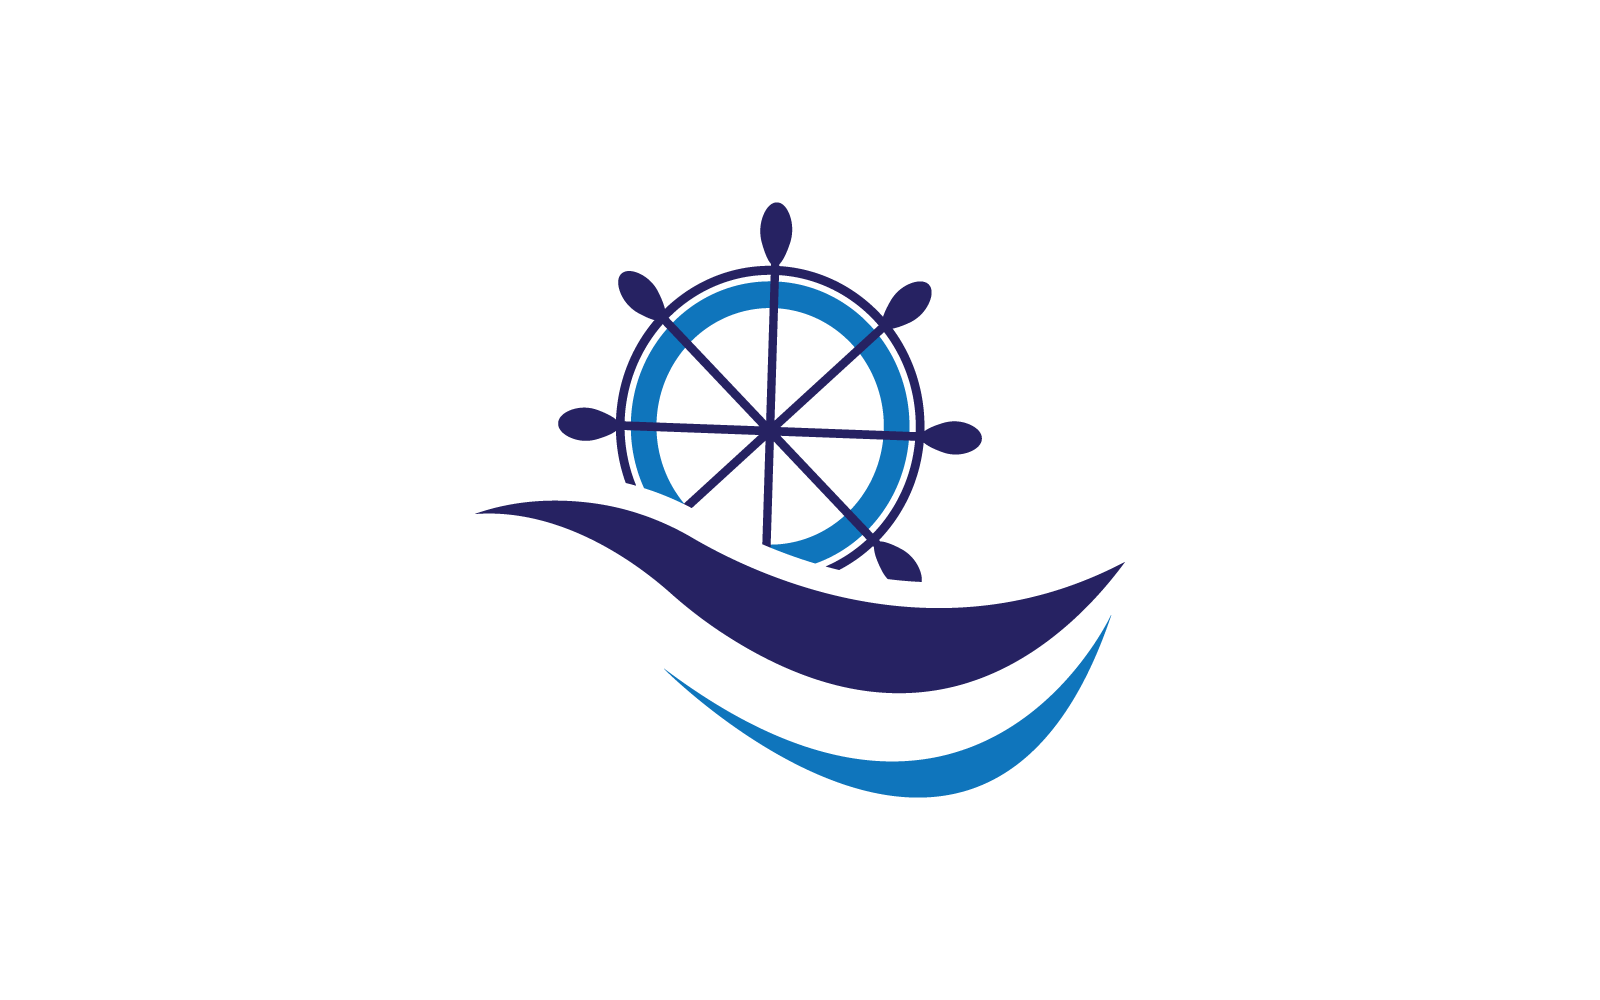 Ship wheel logo icon ilustration vector